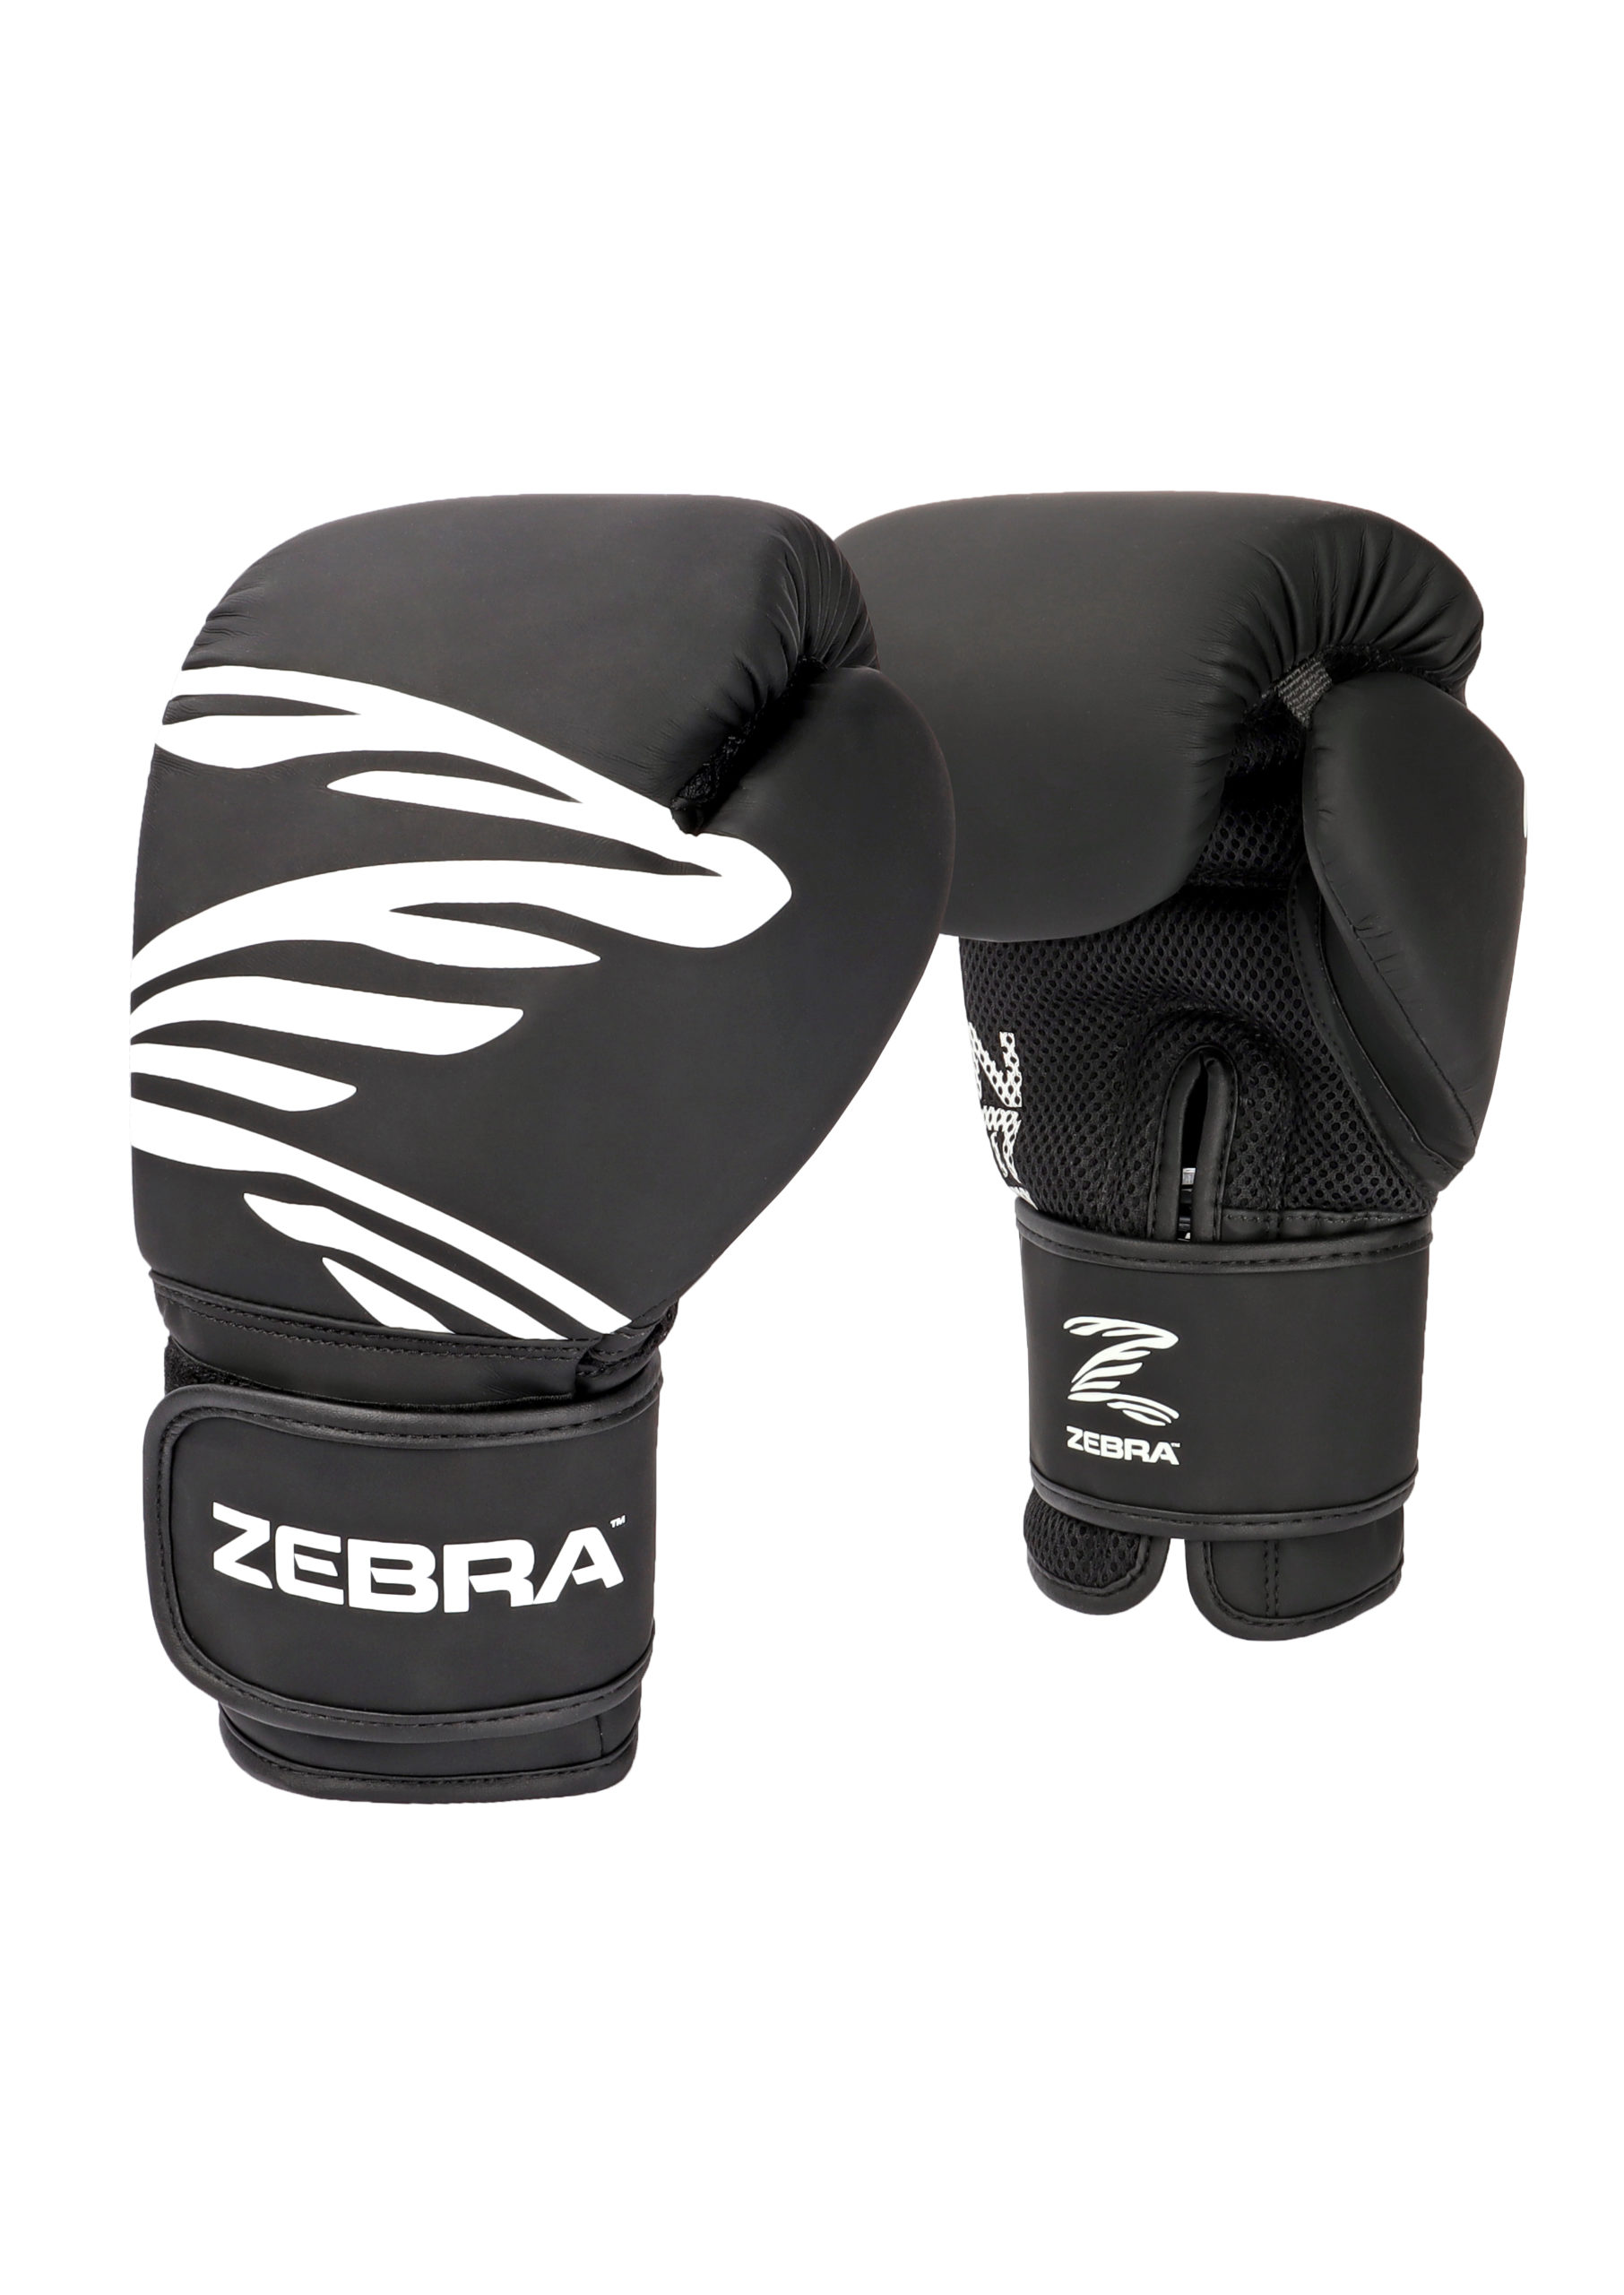 ZEBRA FITNESS Training Gloves